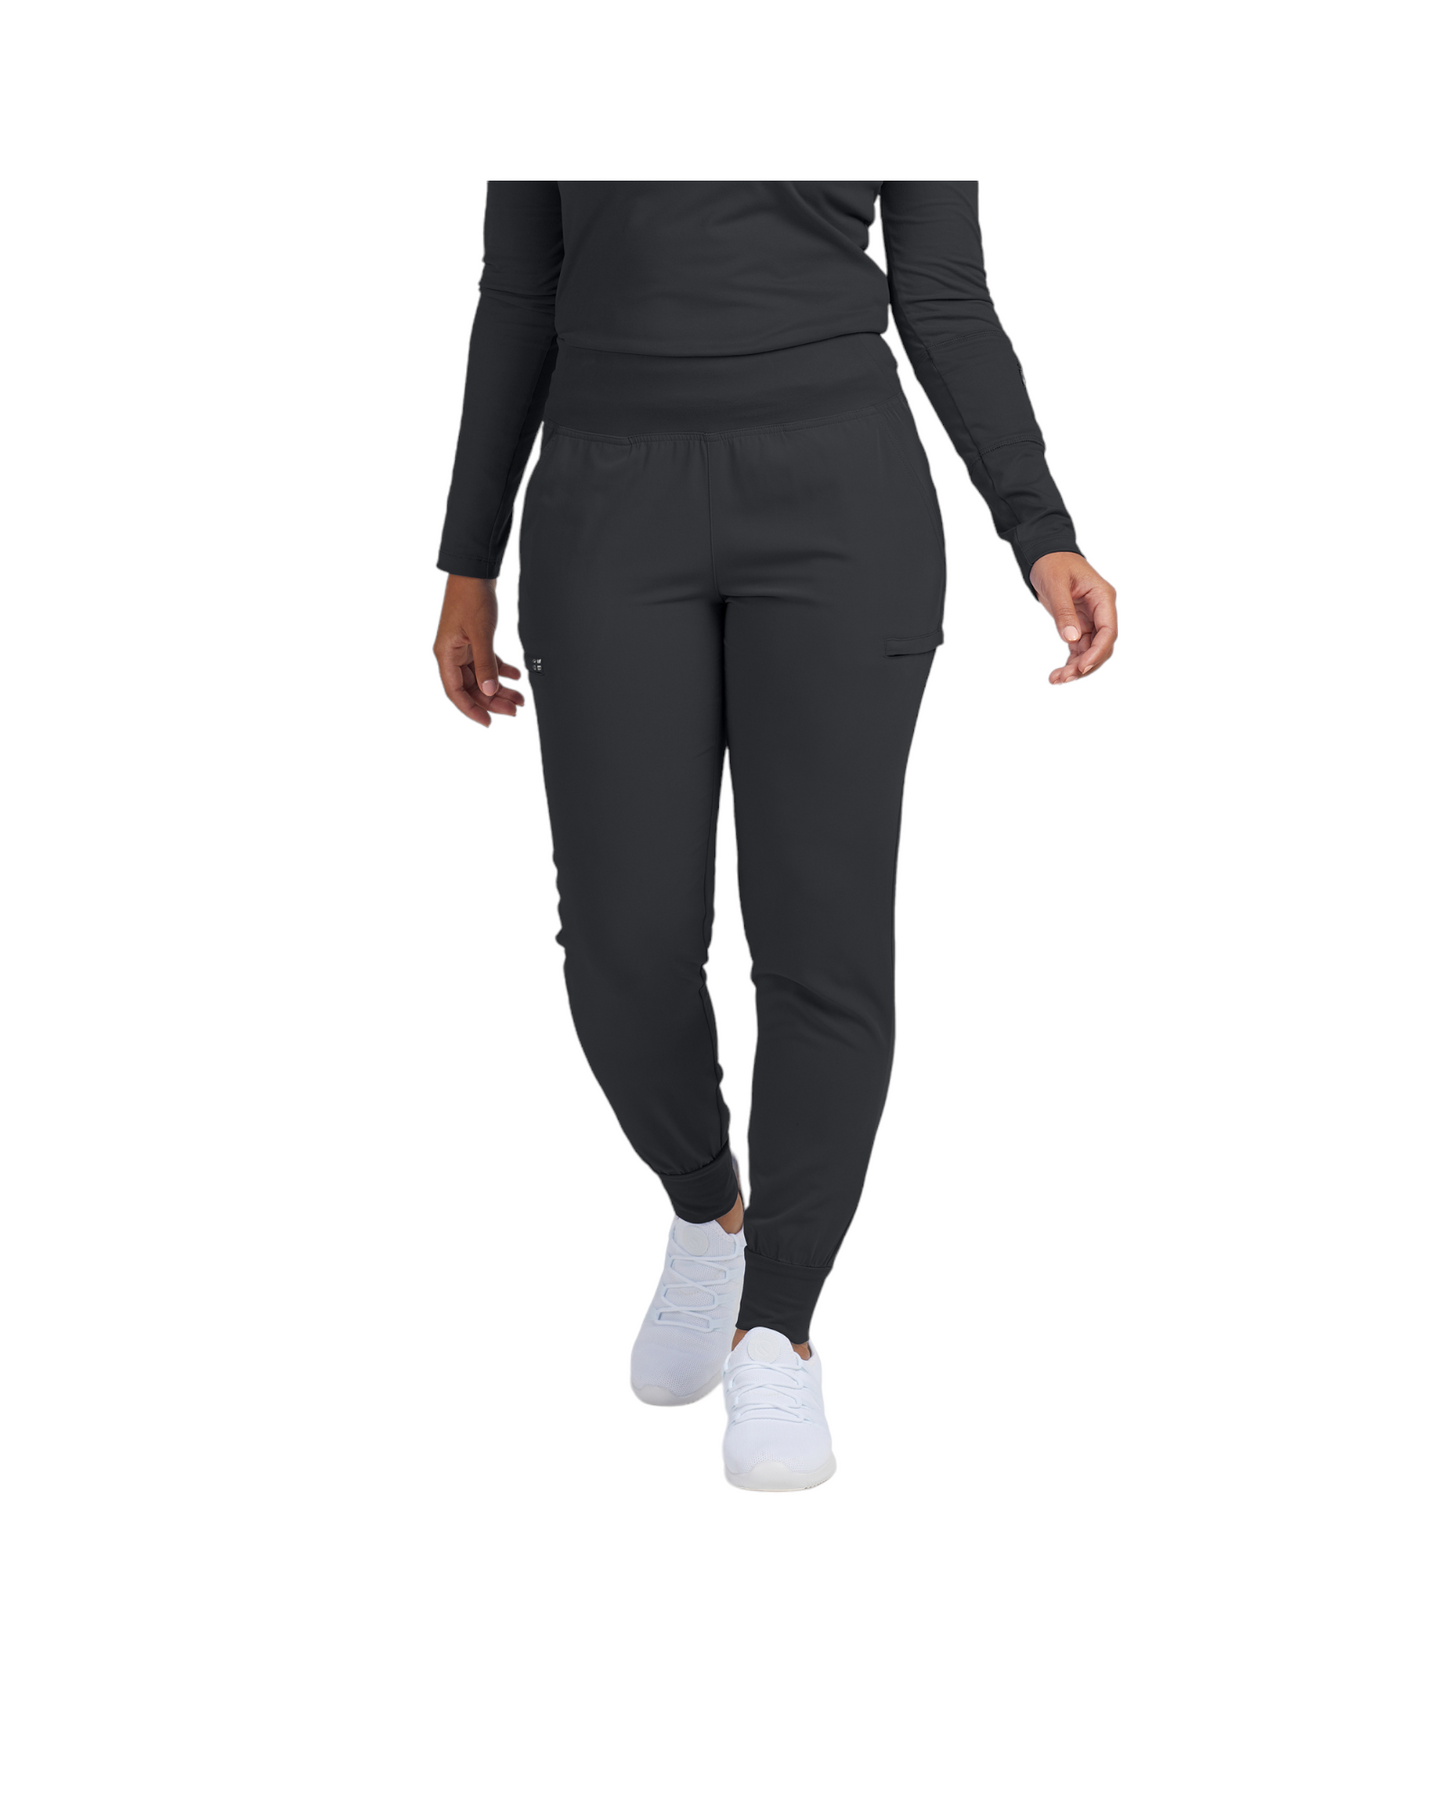 Pantalon jogger avec 6 poches pour femme White Cross CRFT #WB430 couleur Pewter